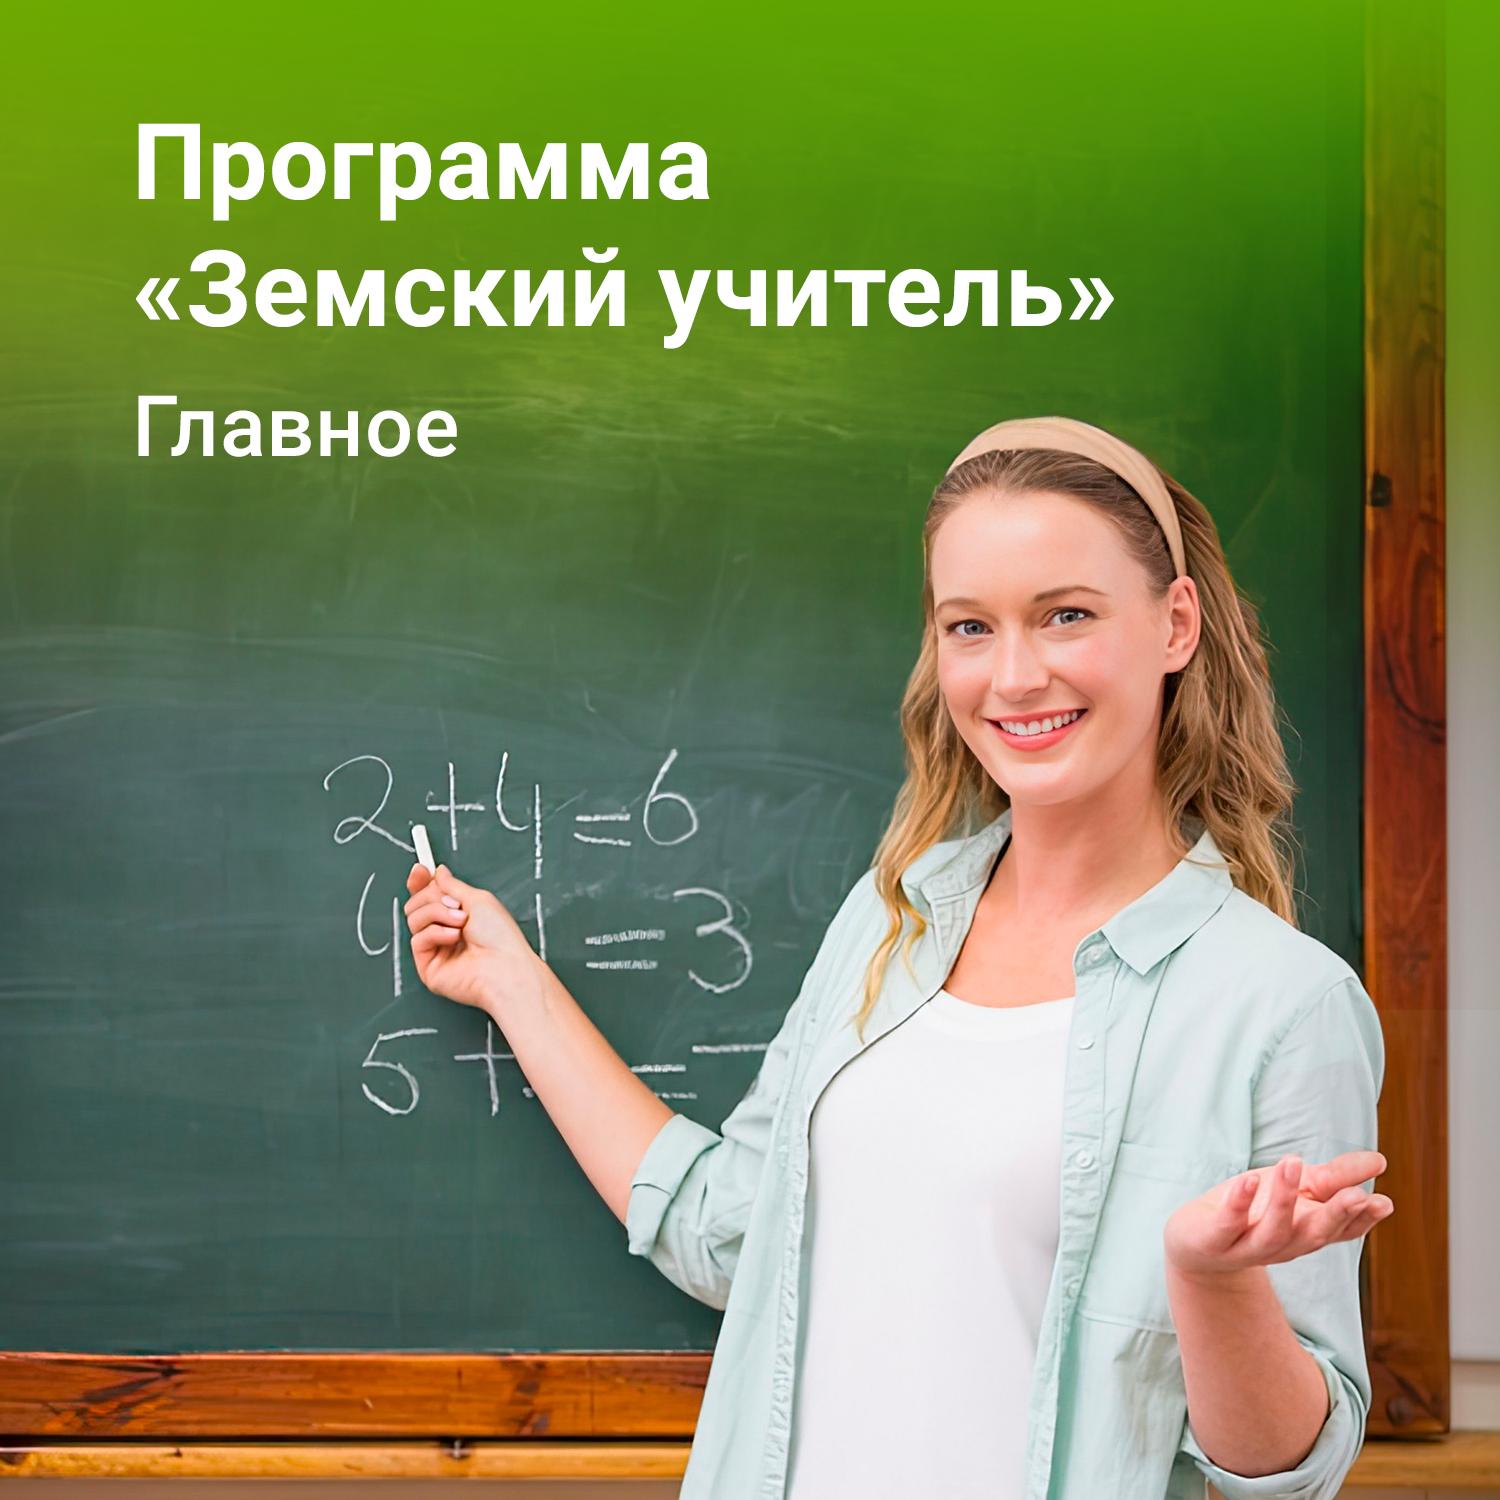 В Саратовской области начинается конкурсный отбор педагогов по программе &amp;quot;Земский учитель&amp;quot;.